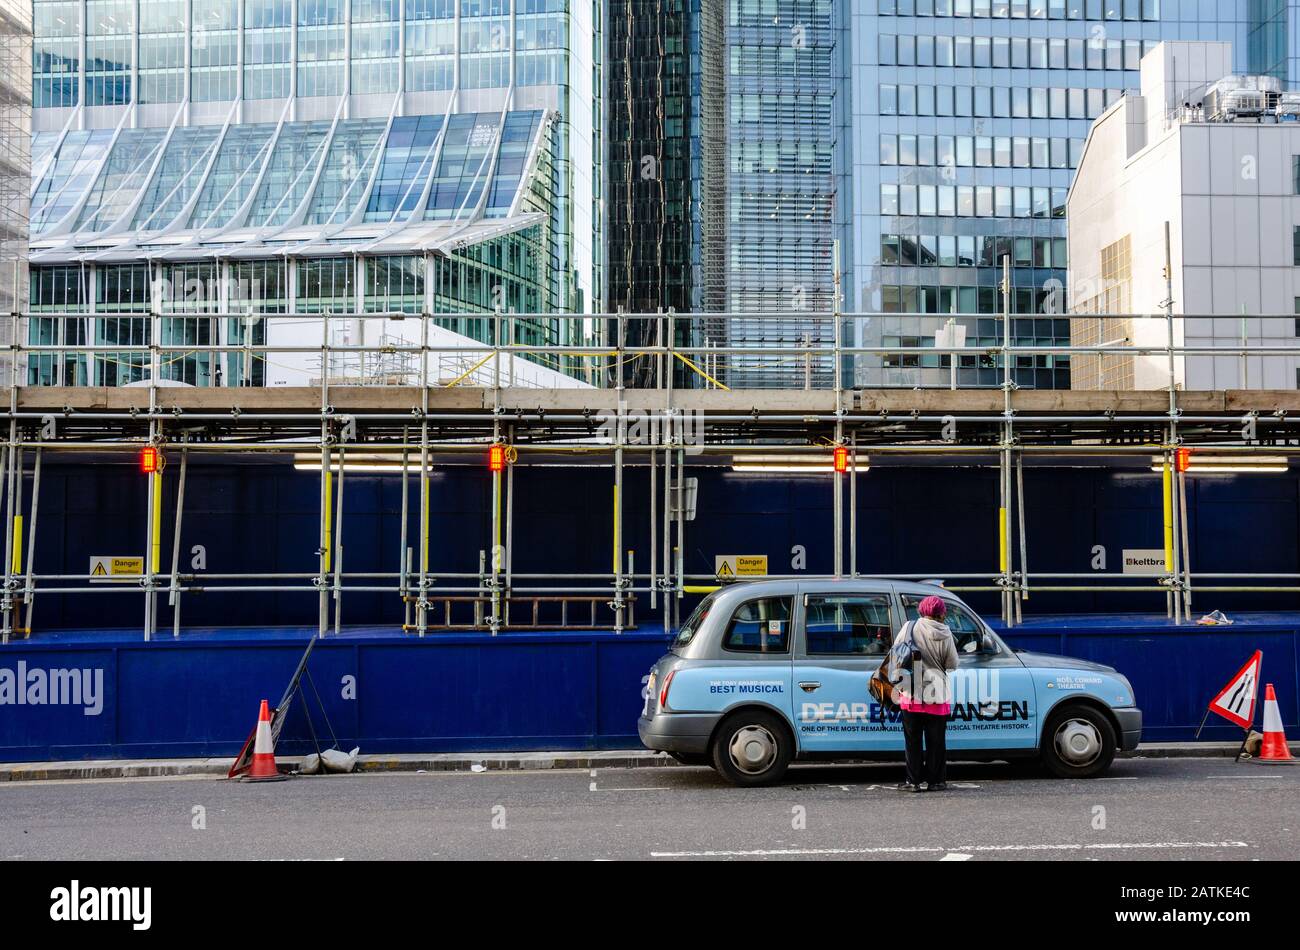 Eine Taxifahrerin steigt in ihr Taxi, das vor Bauarbeiten geparkt ist, und ist auf modernen Büroblöcken ausfahrend. Stockfoto